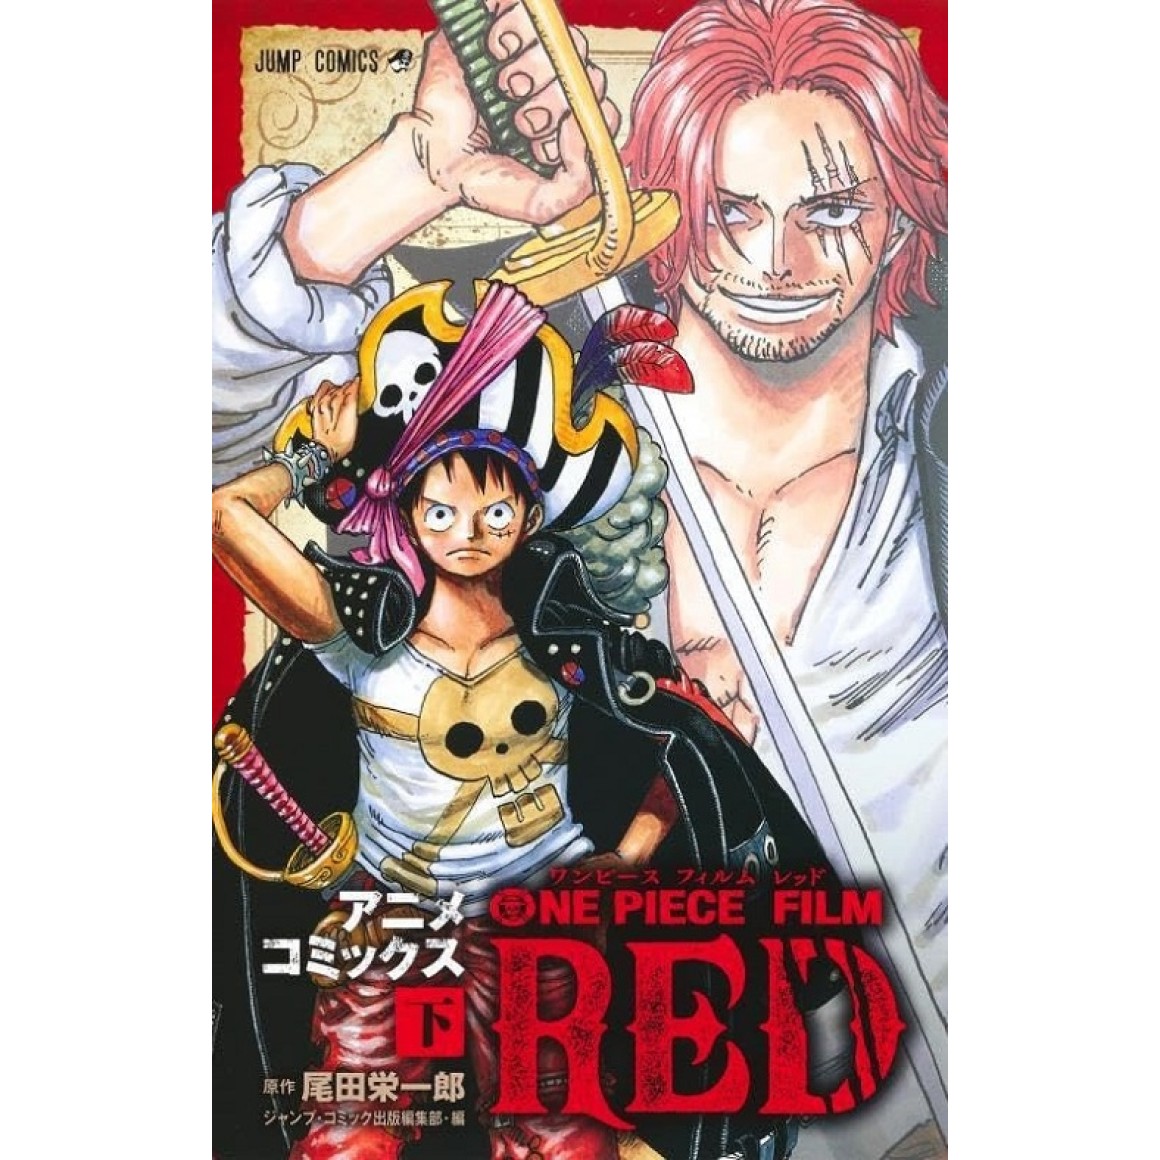 One Piece Film Red já é o 6º filme que mais arrecadou no Japão - Manga  Livre RS